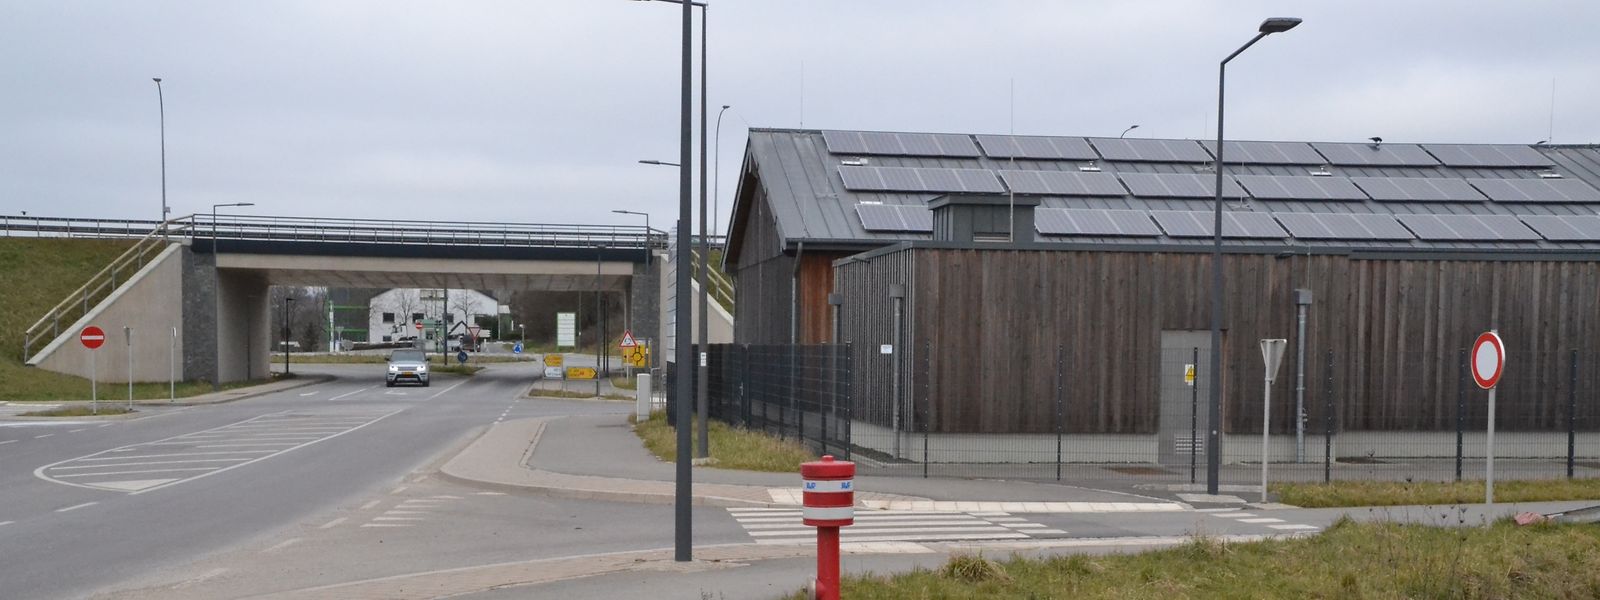 Der Hydrant markiert die zukünftige Einfahrt zum CIS Nordstad. Im Hintergrund ist die Brücke der B7 an der Industriezone Fridhaff zu sehen.